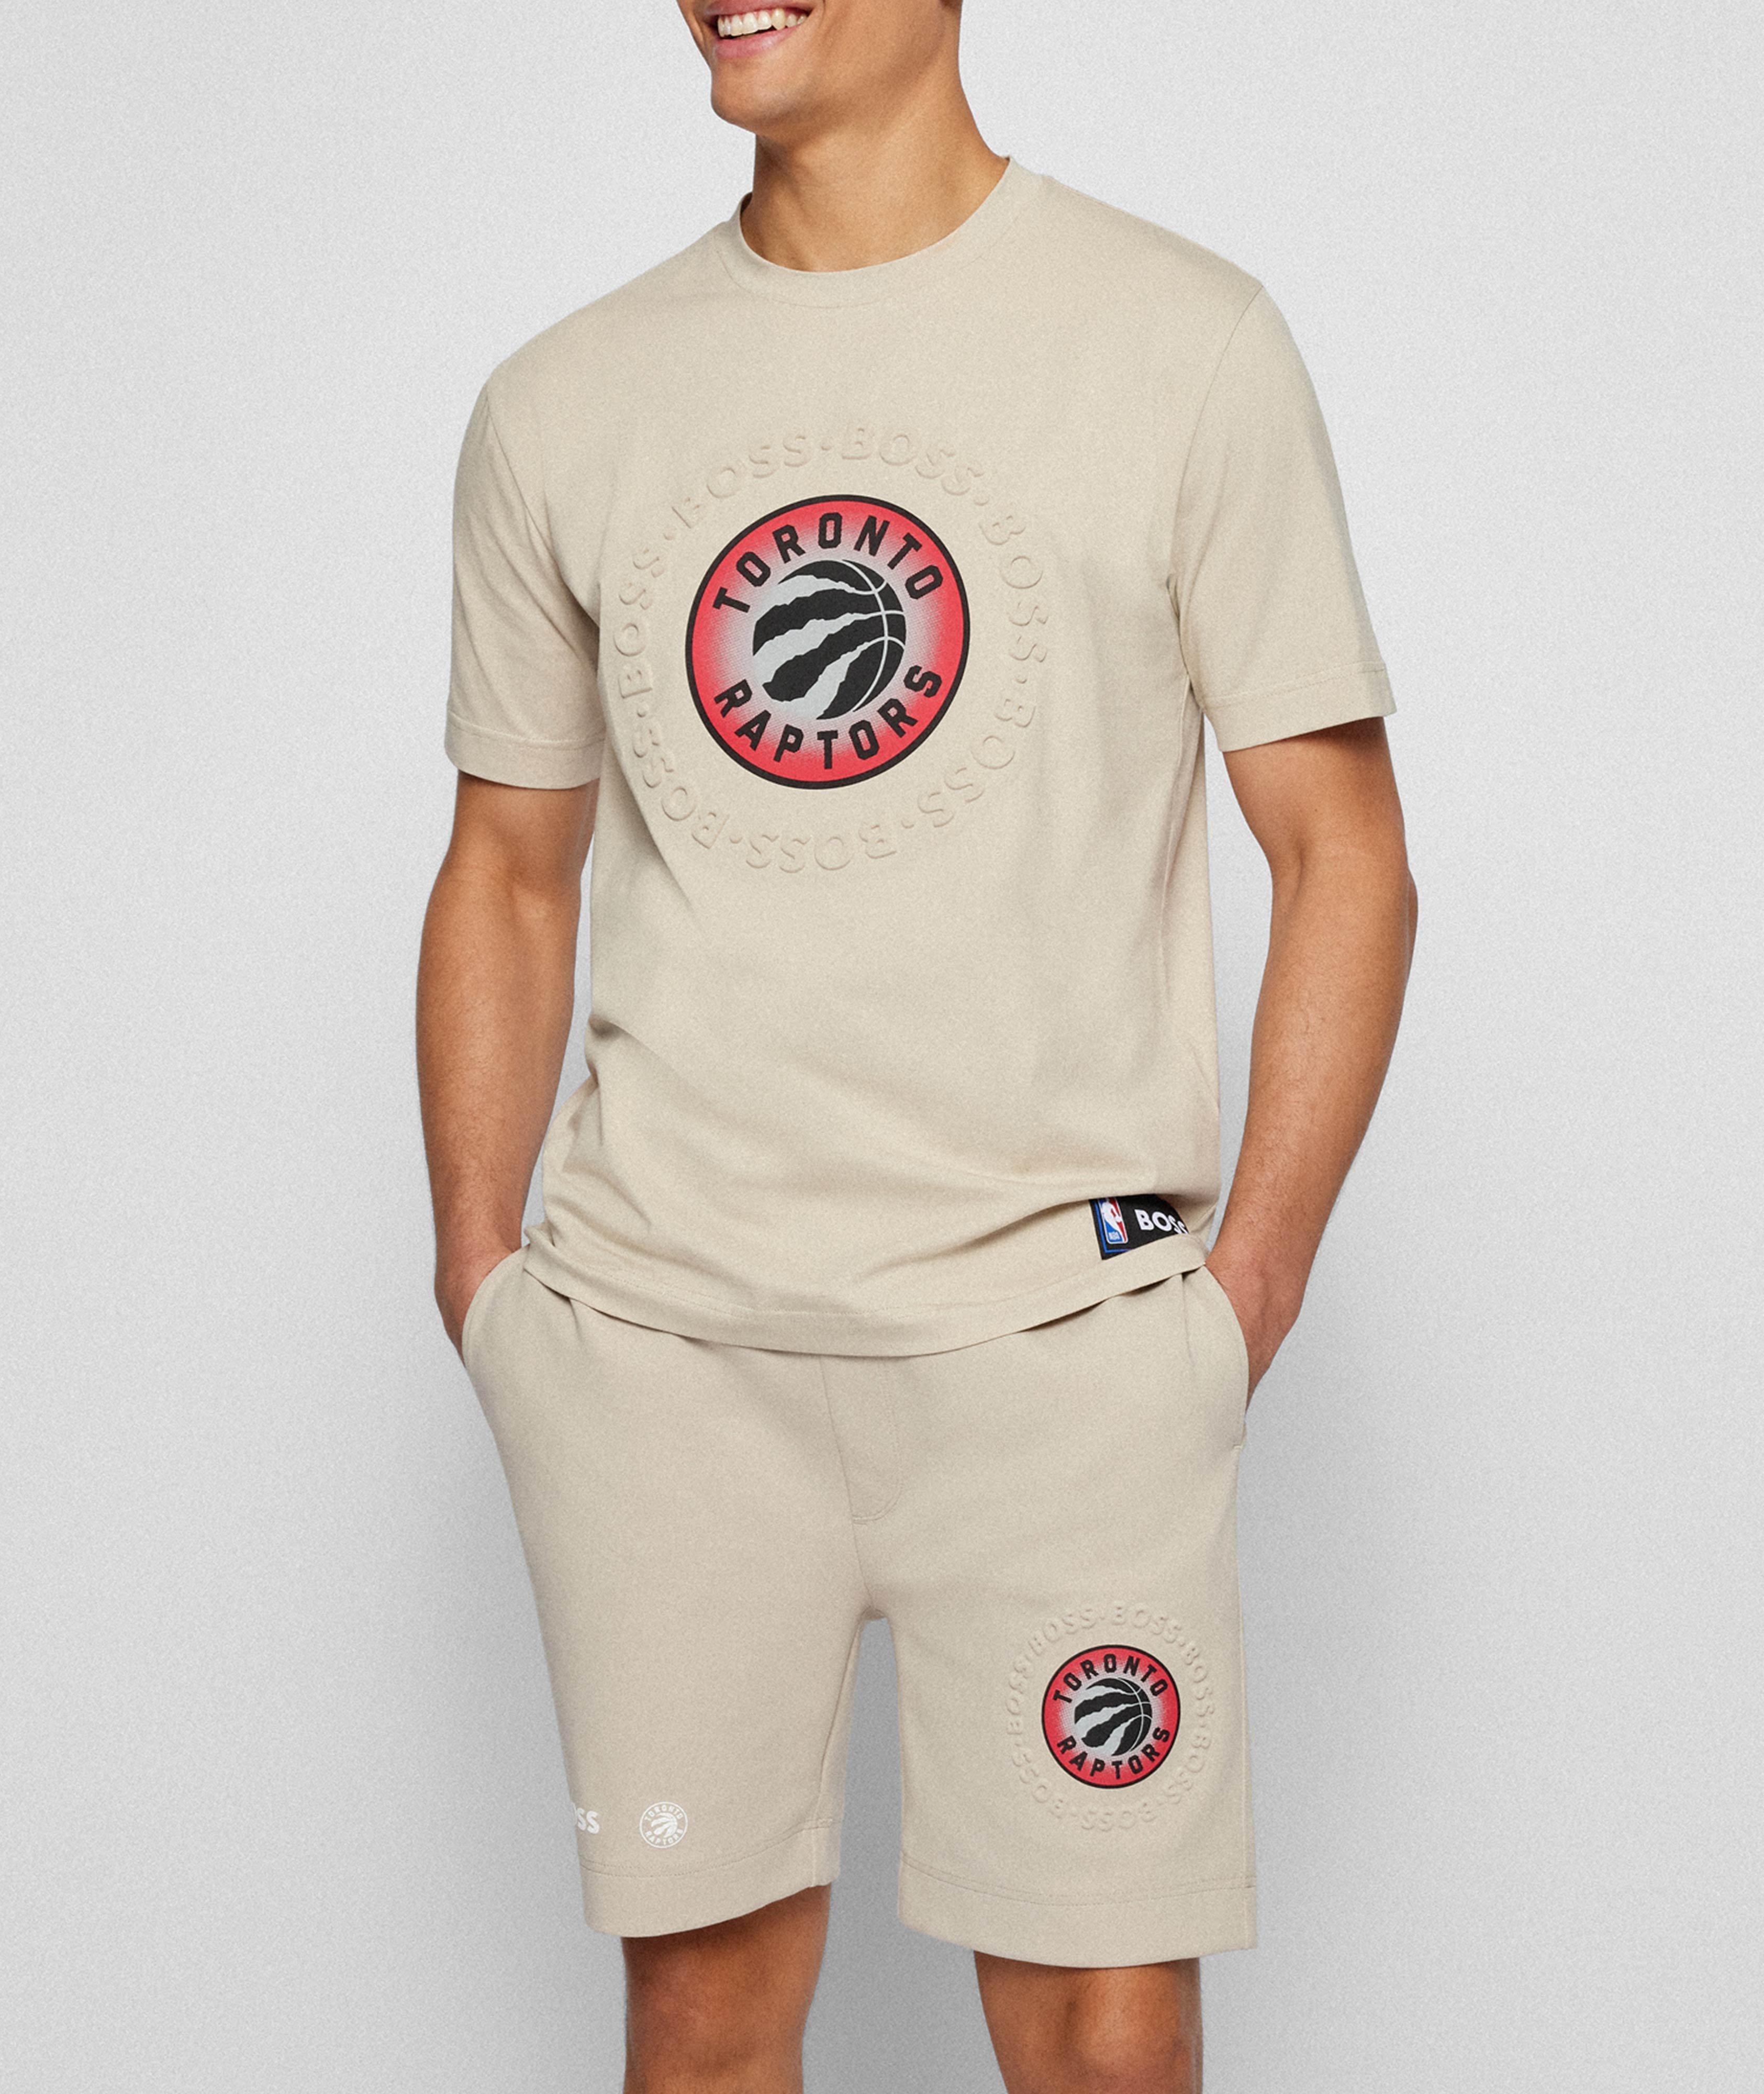 T-shirt avec logo des Raptors, collection NBA image 1